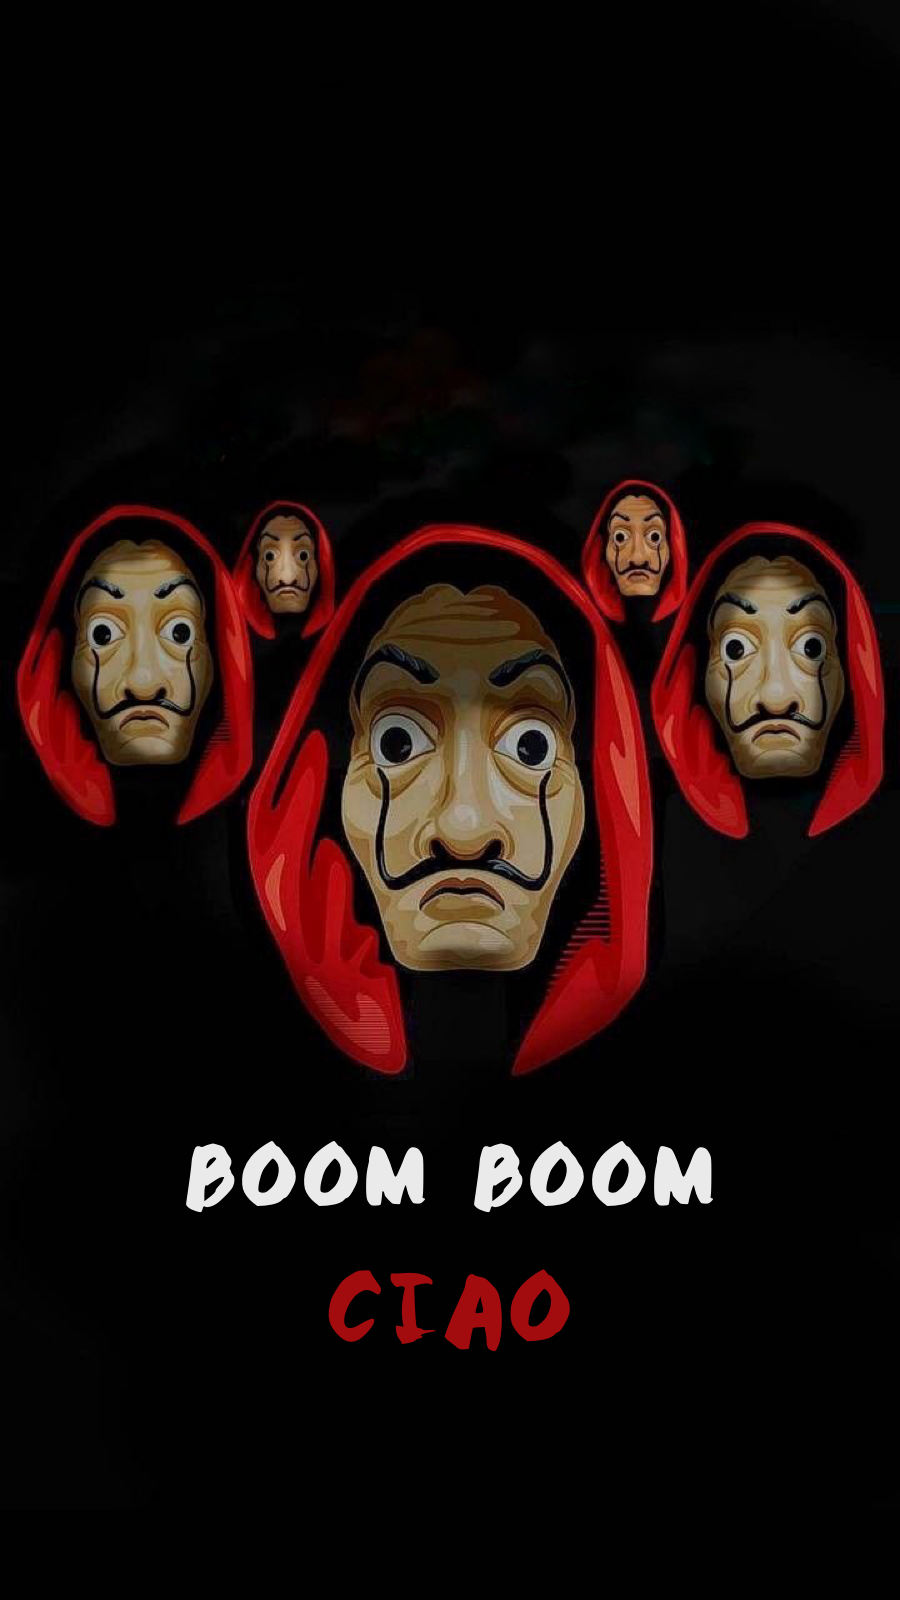 Boom boom cia La casa de papel Seasone 3. Friends wallpaper